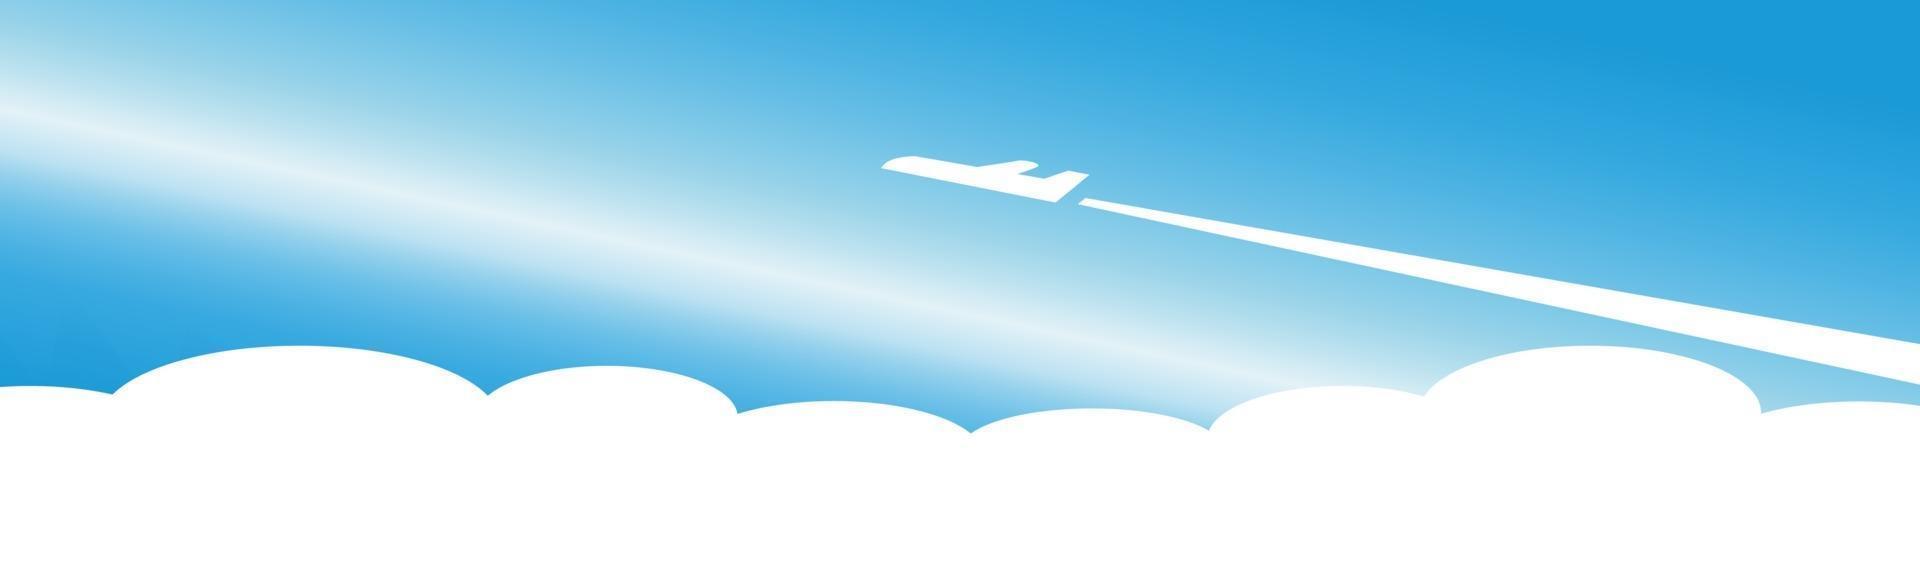 Silhouette eines Flugzeugs, das auf einem Hintergrund des blauen n - Vektors abhebt vektor